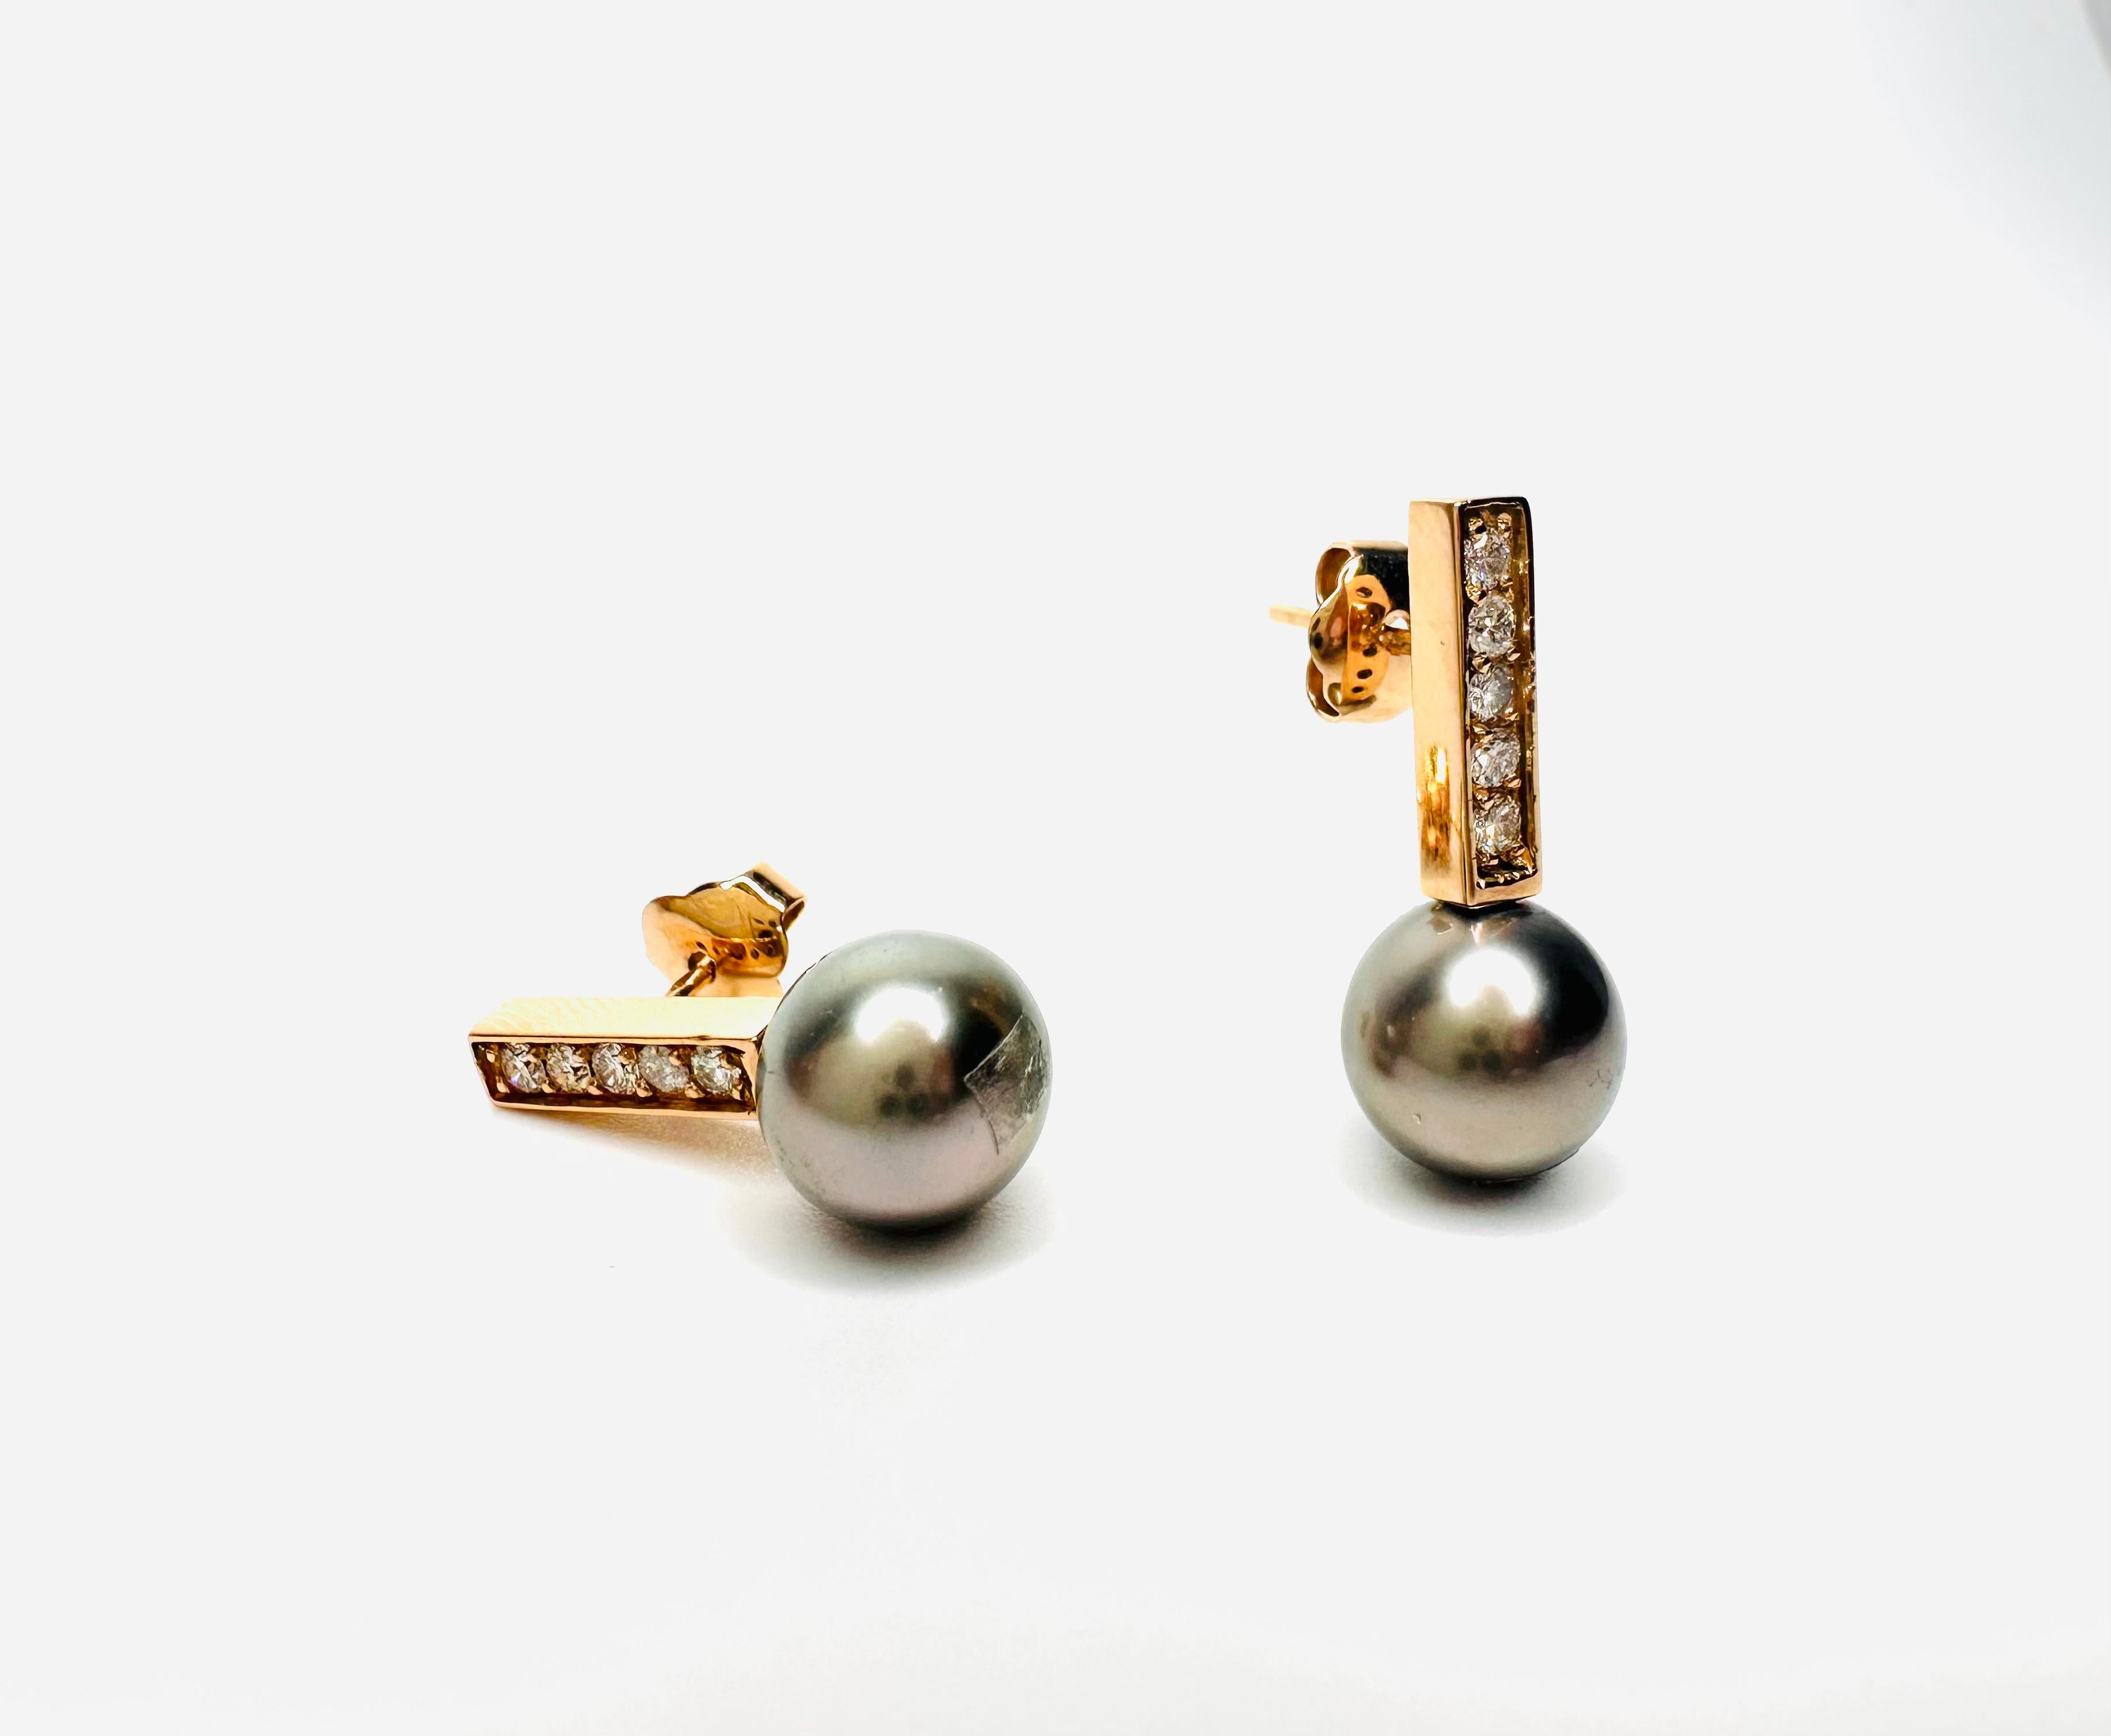 Paire de boucles d'oreilles en or rose 18 carats composée de perles de culture de Tahiti, sphériques, vert plomb, 9,5 et 9,6 mm, qualité GemA+.
La paire de boucles d'oreilles comporte 10 diamants ronds de 2 mm chacun pour un total de 0,365